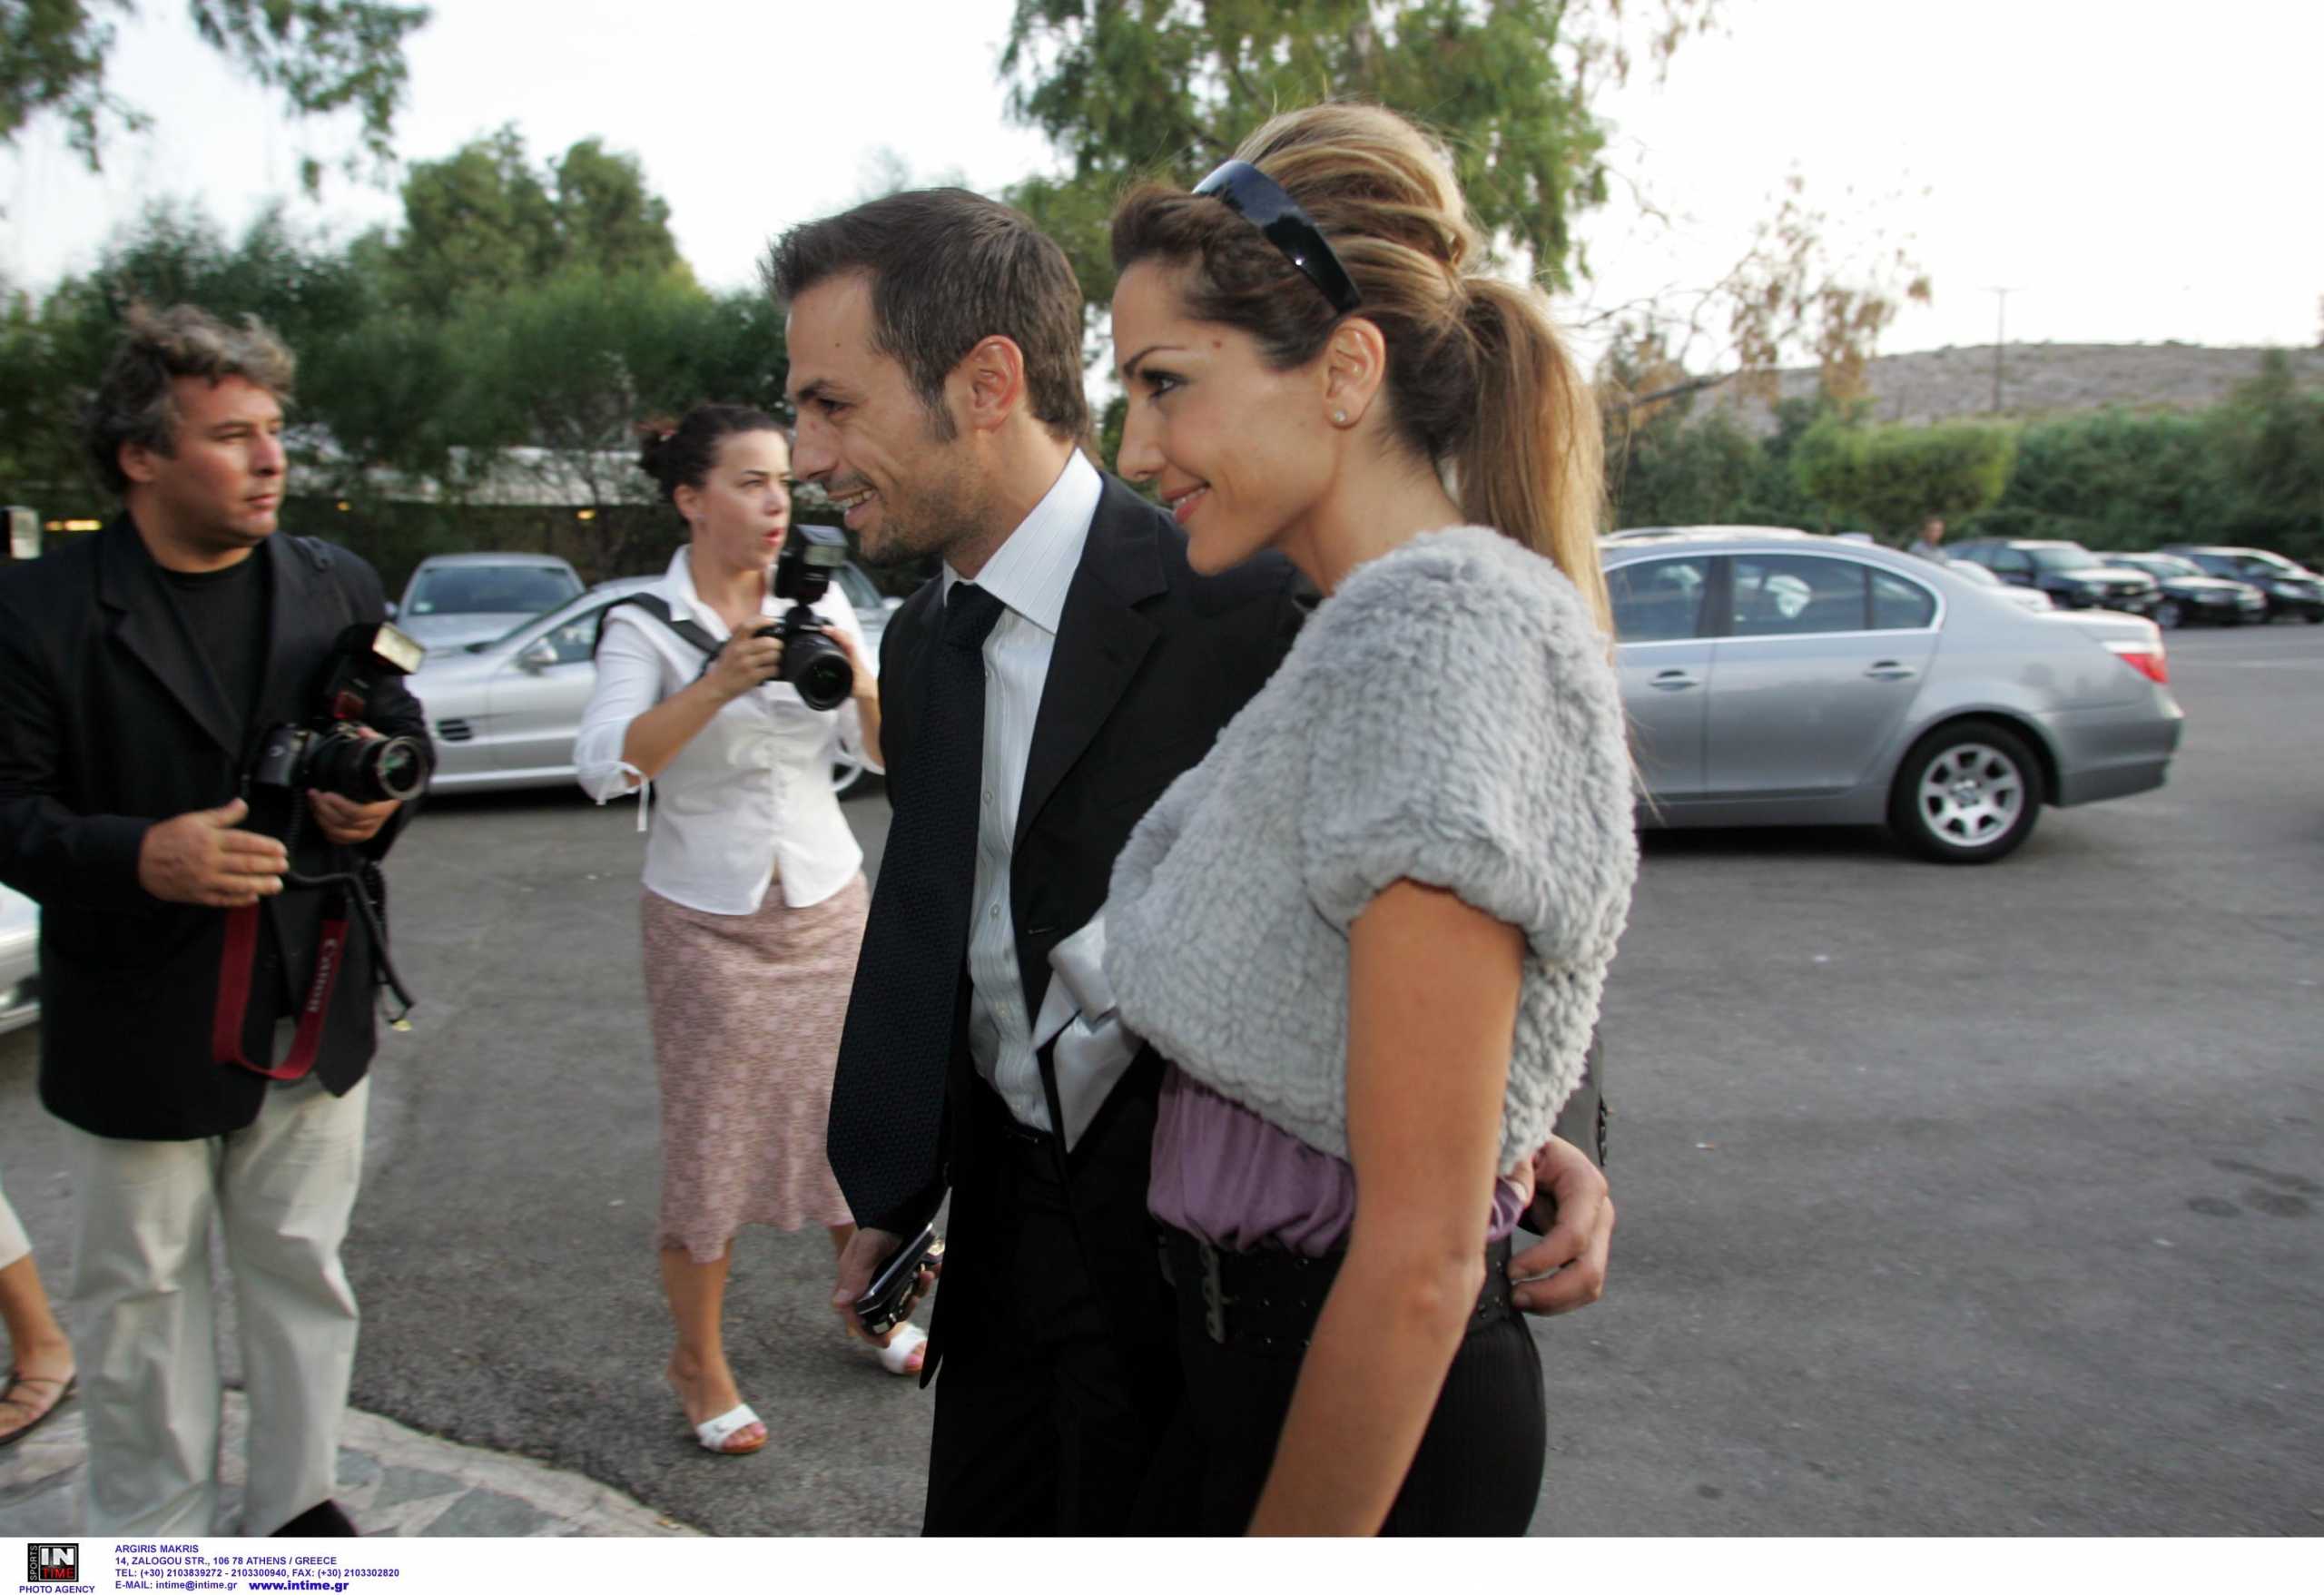 Δέσποινα Βανδή – Ντέμης Νικολαΐδης: Το παρασκήνιο του χωρισμού – Γιατί καθυστέρησε το διαζύγιο